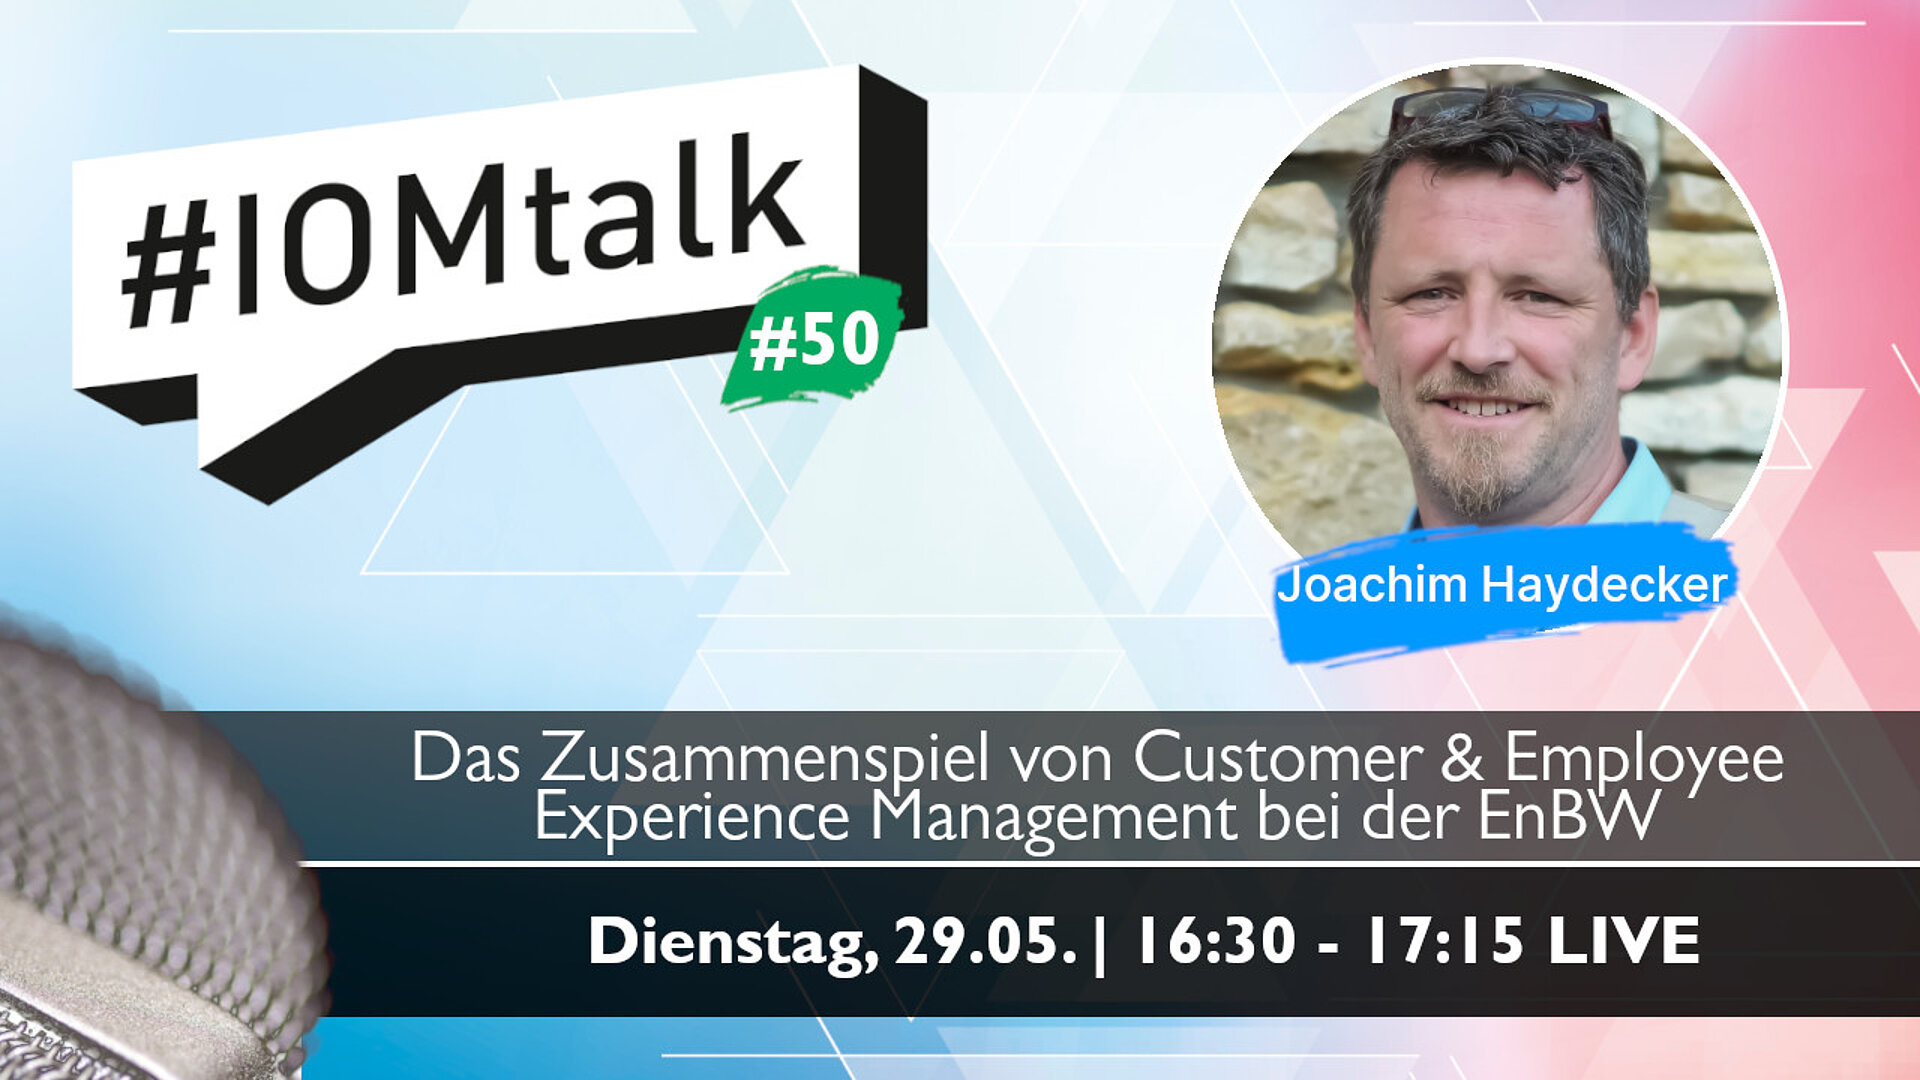 Im Gespräch mit Joachim Haydecker über seine Rolle als Customer & Employee Experience Manager bei der EnBW